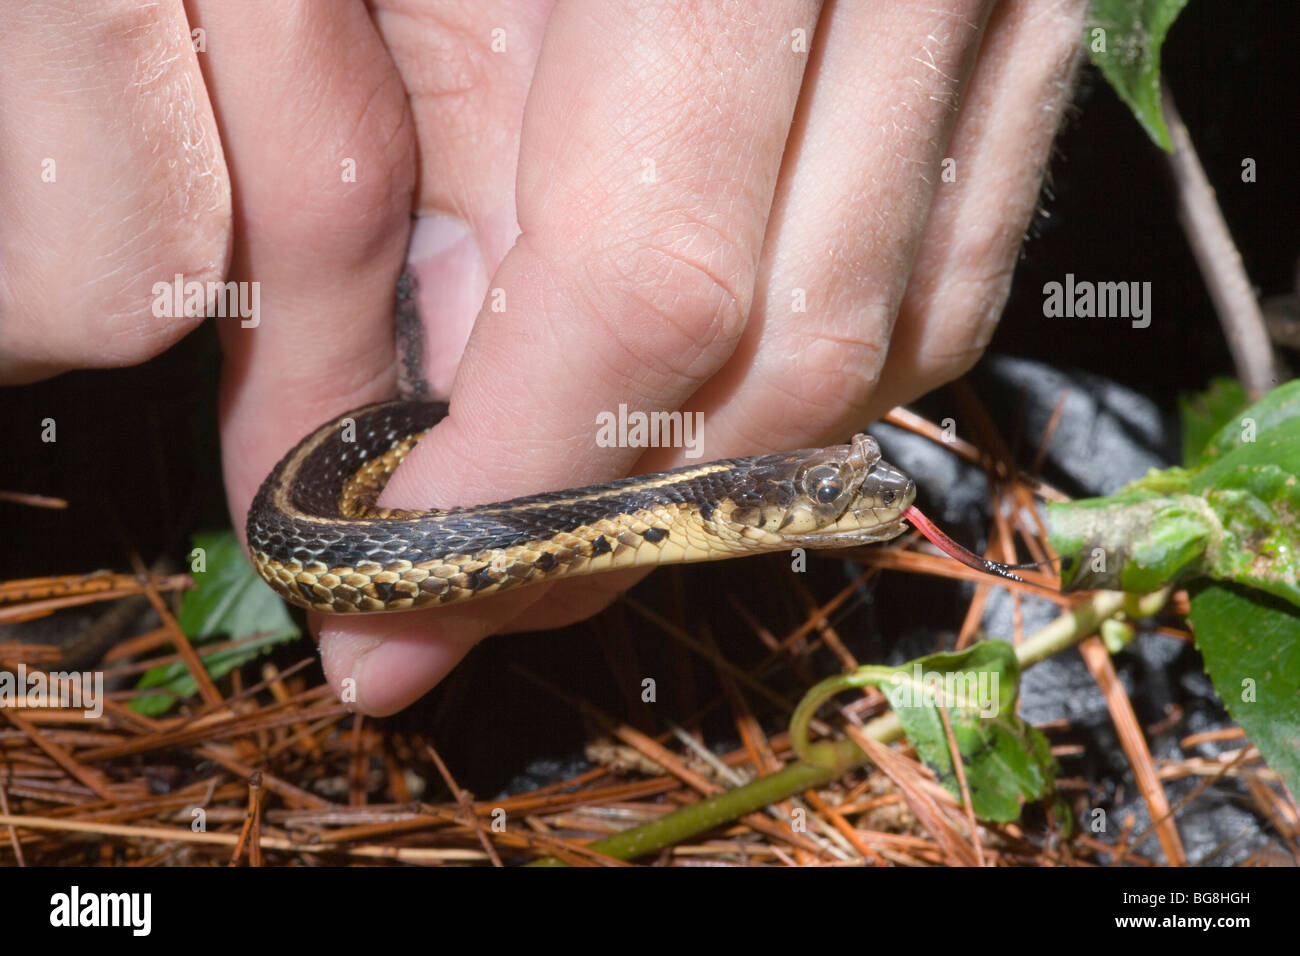 Giarrettiera orientale Snake Thamnophis sirtalis sirtalis, mano trattenuto per mostrare l'inizio di desquamazione o ecdysis dalla testa. Foto Stock